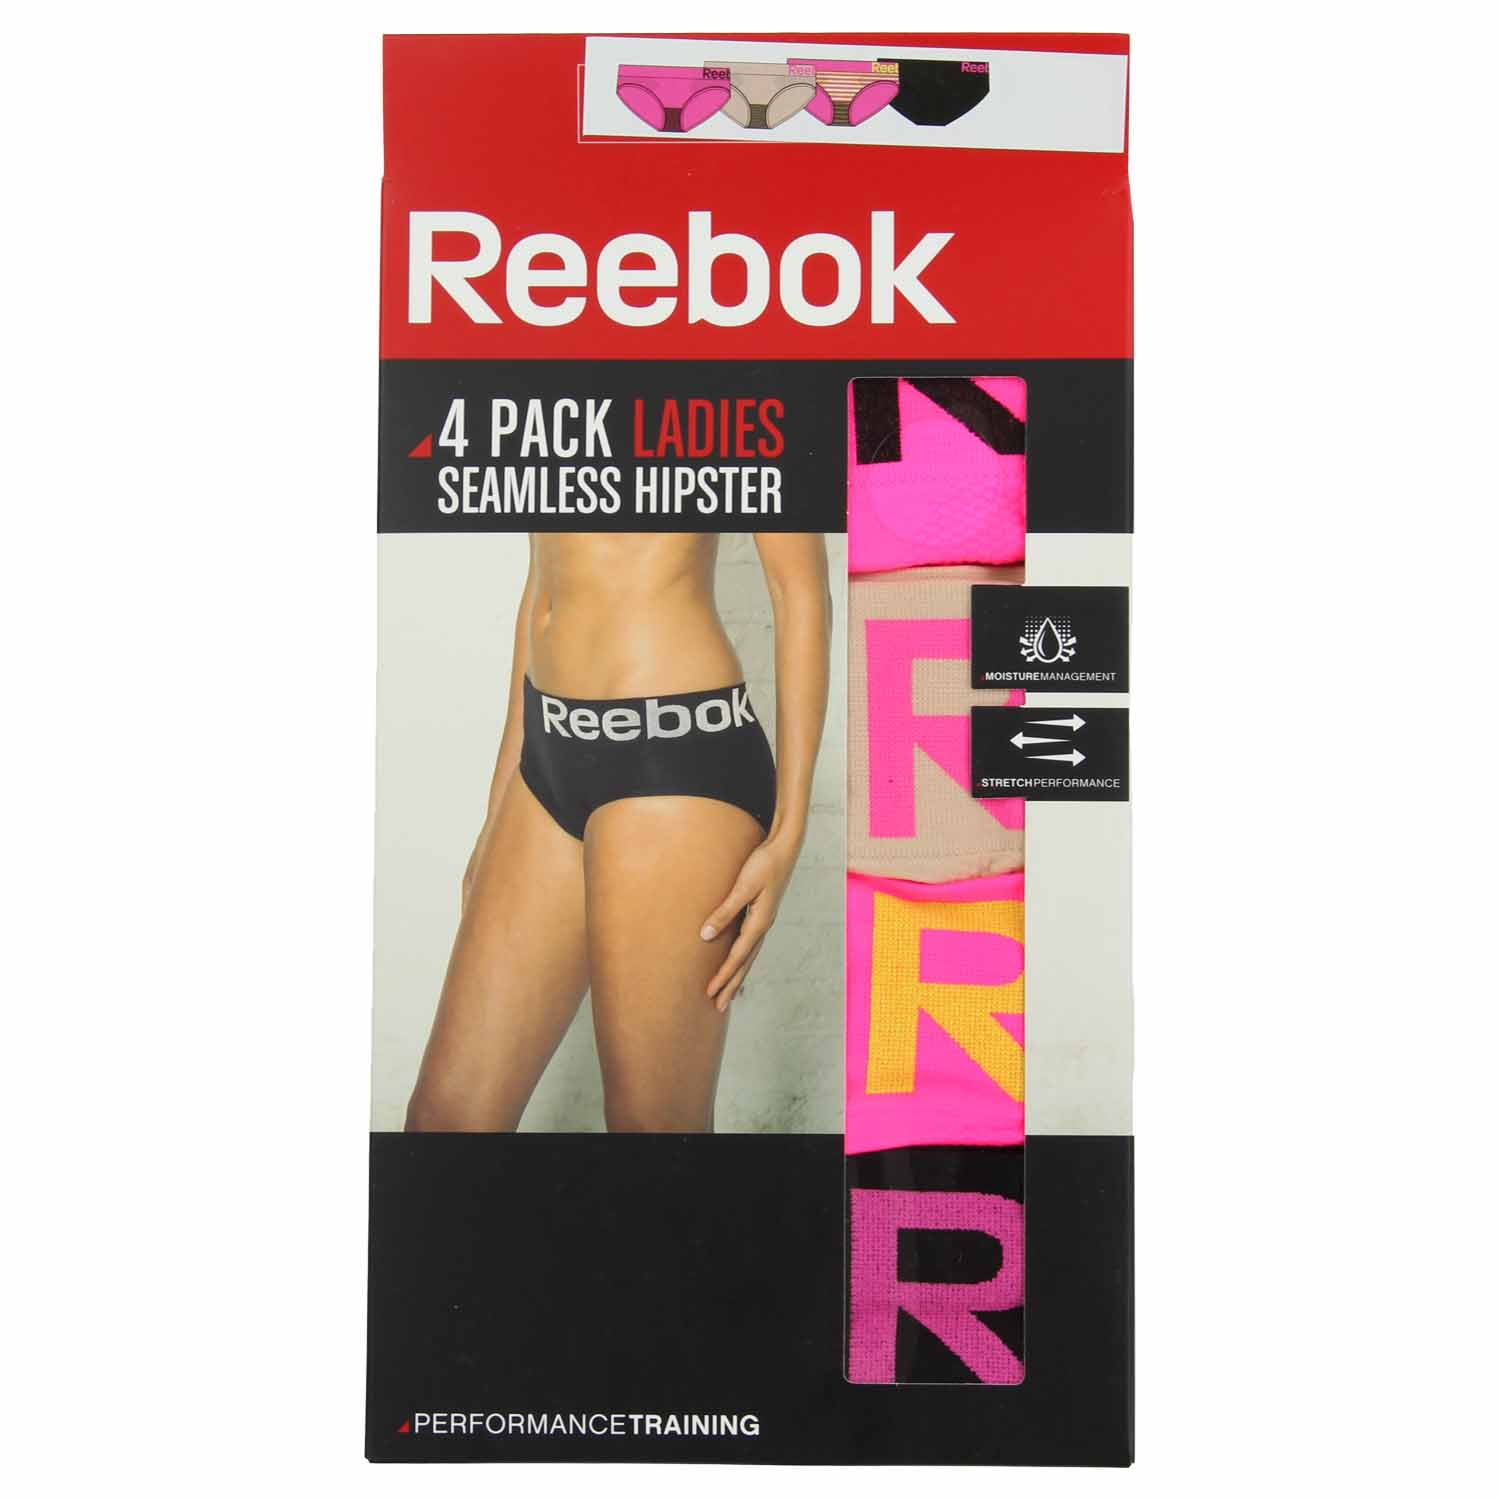 reebok women's no show underwear